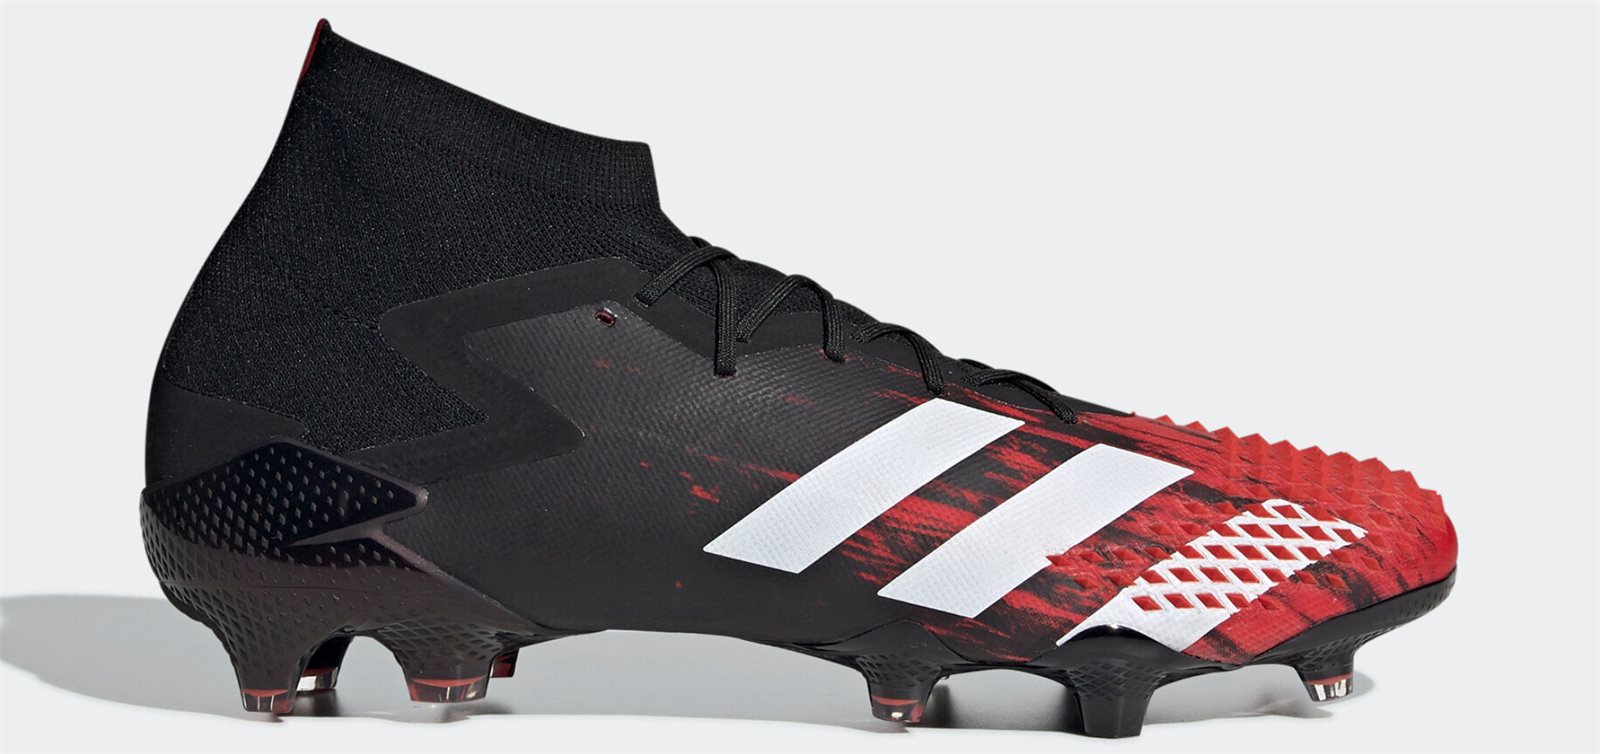 Giày bóng đá Adidas Predator 20.1 bản có dây mới nhất năm 2020